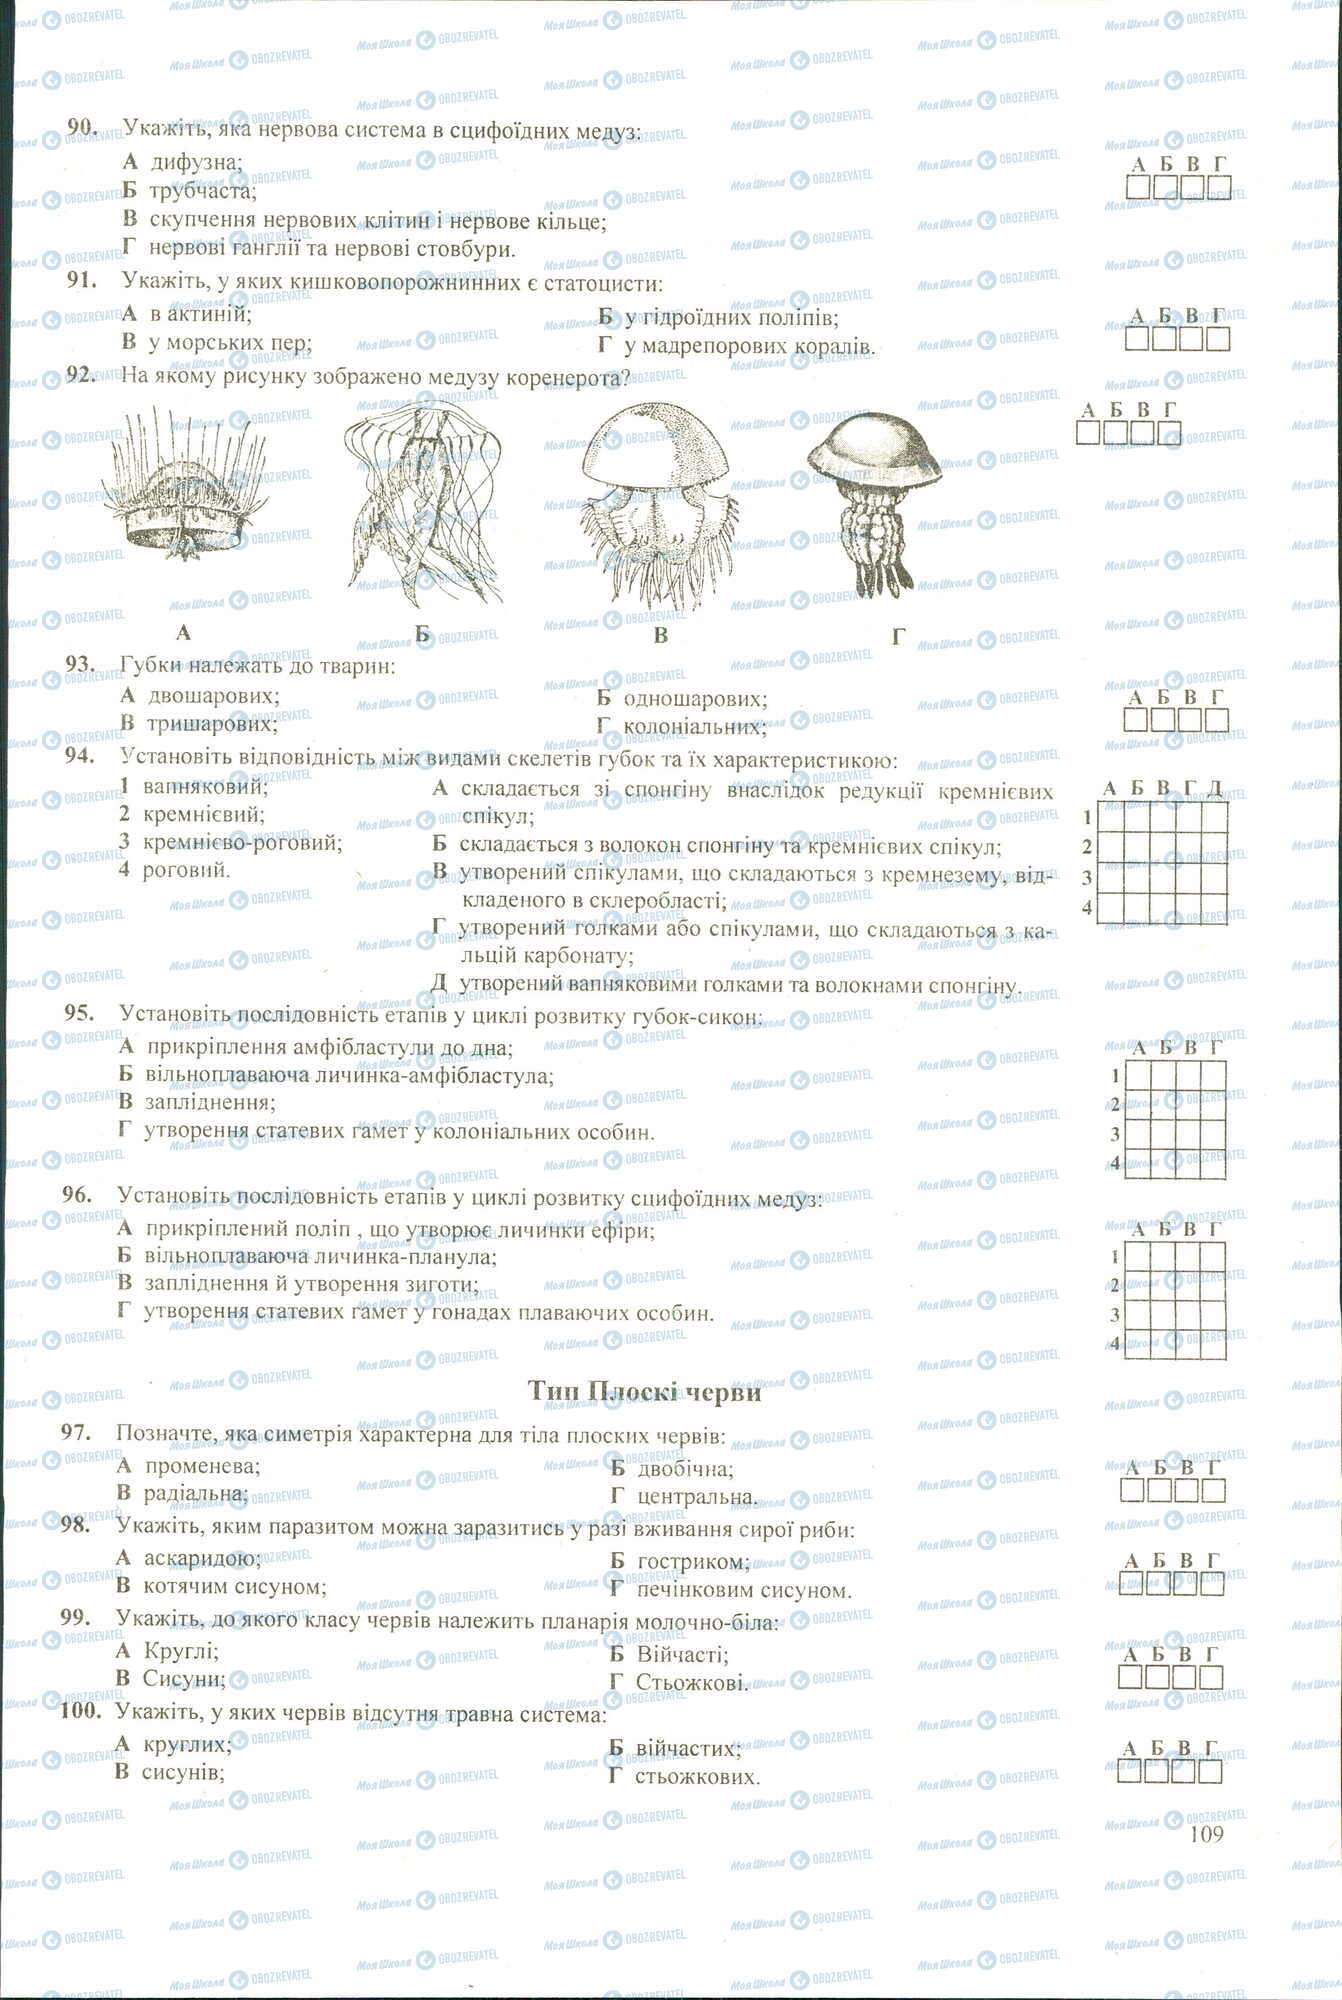 ЗНО Биология 11 класс страница 90-100